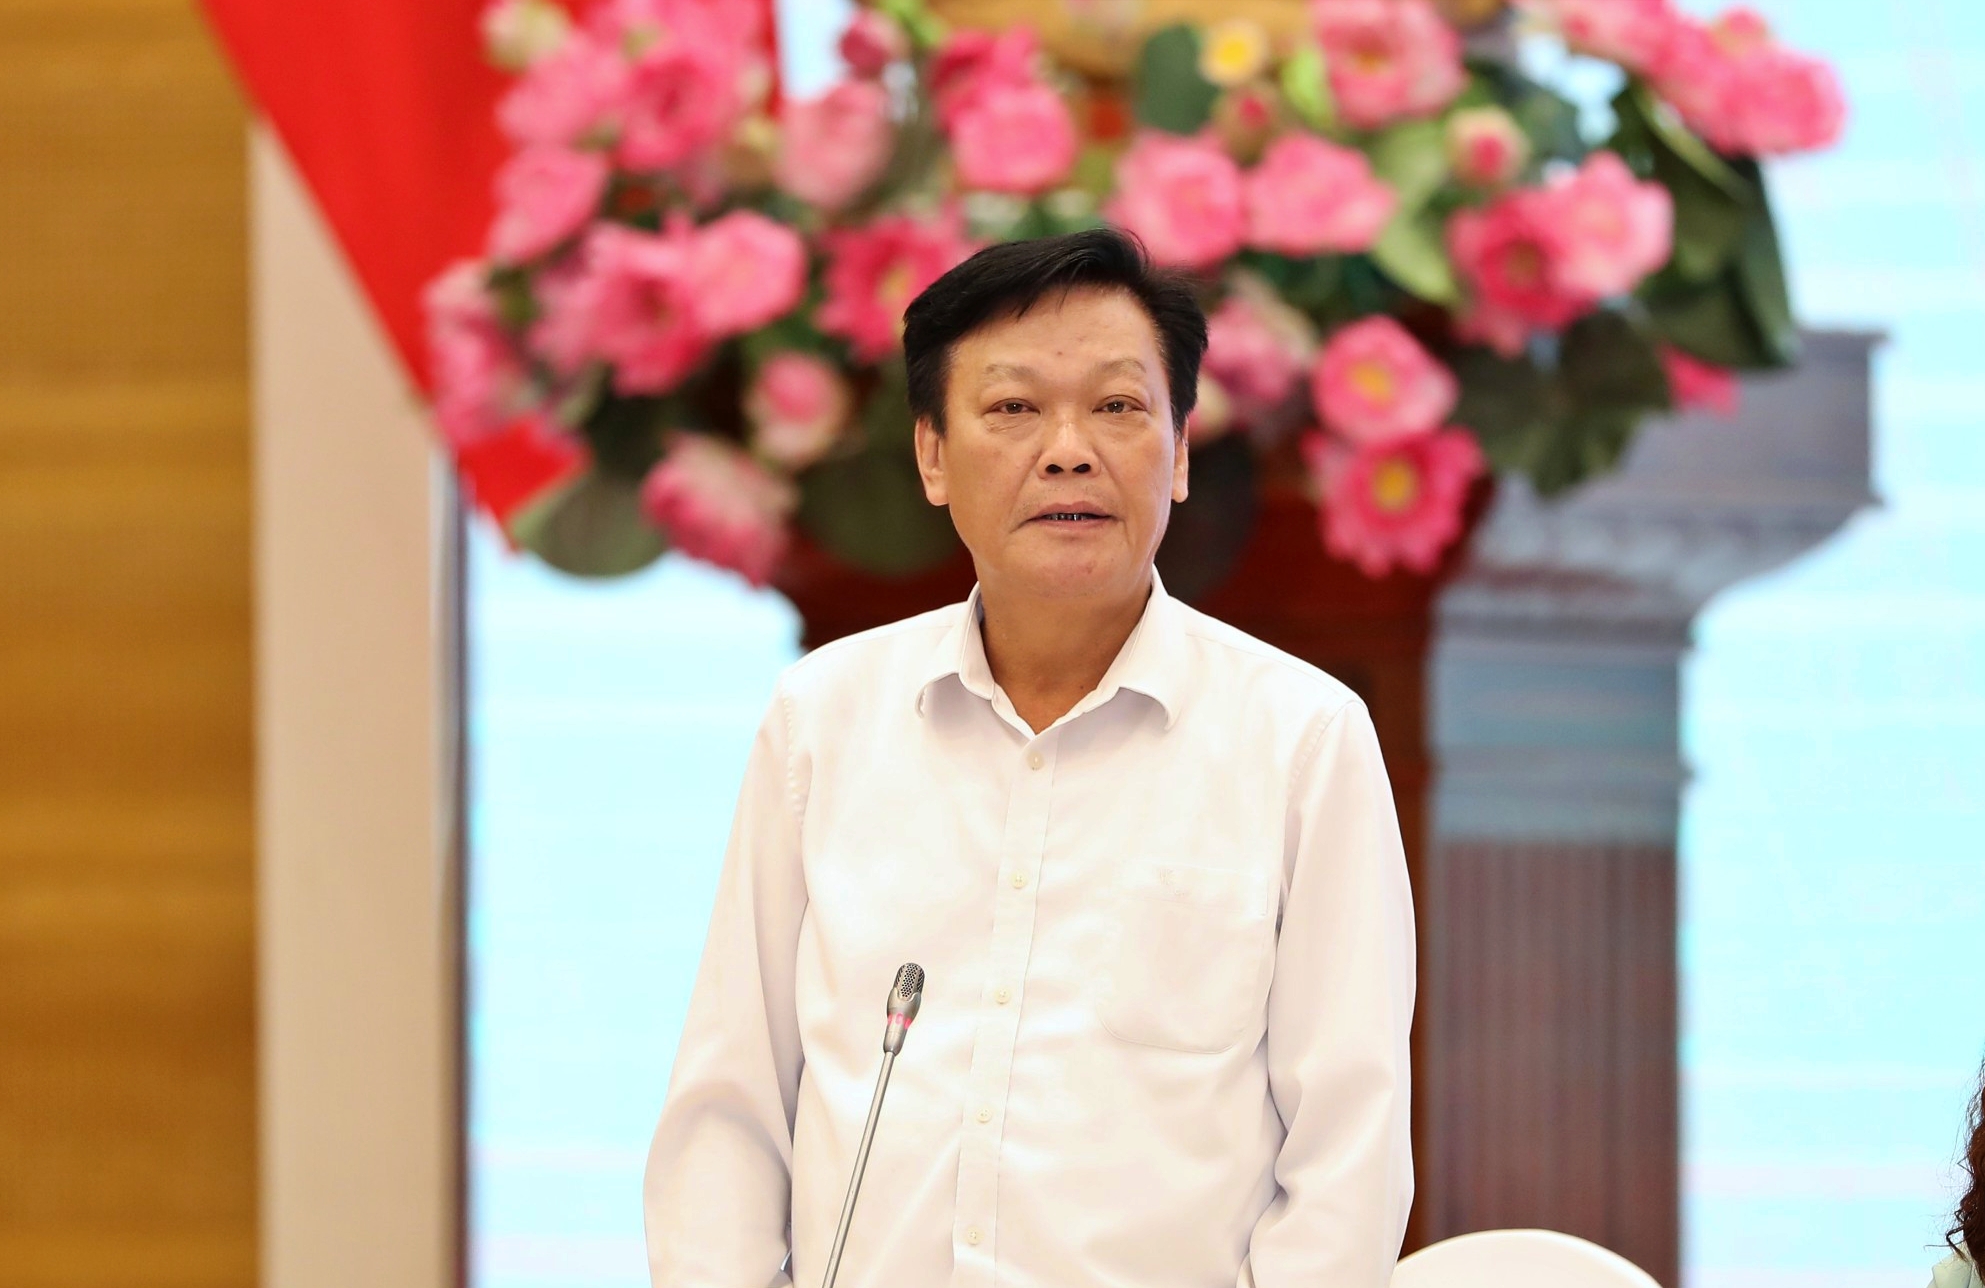 Phó Thủ tướng Trần Lưu Quang ký quyết định kéo dài thời gian giữ chức vụ cho Thứ trưởng Nguyễn Duy Thăng - Ảnh 1.